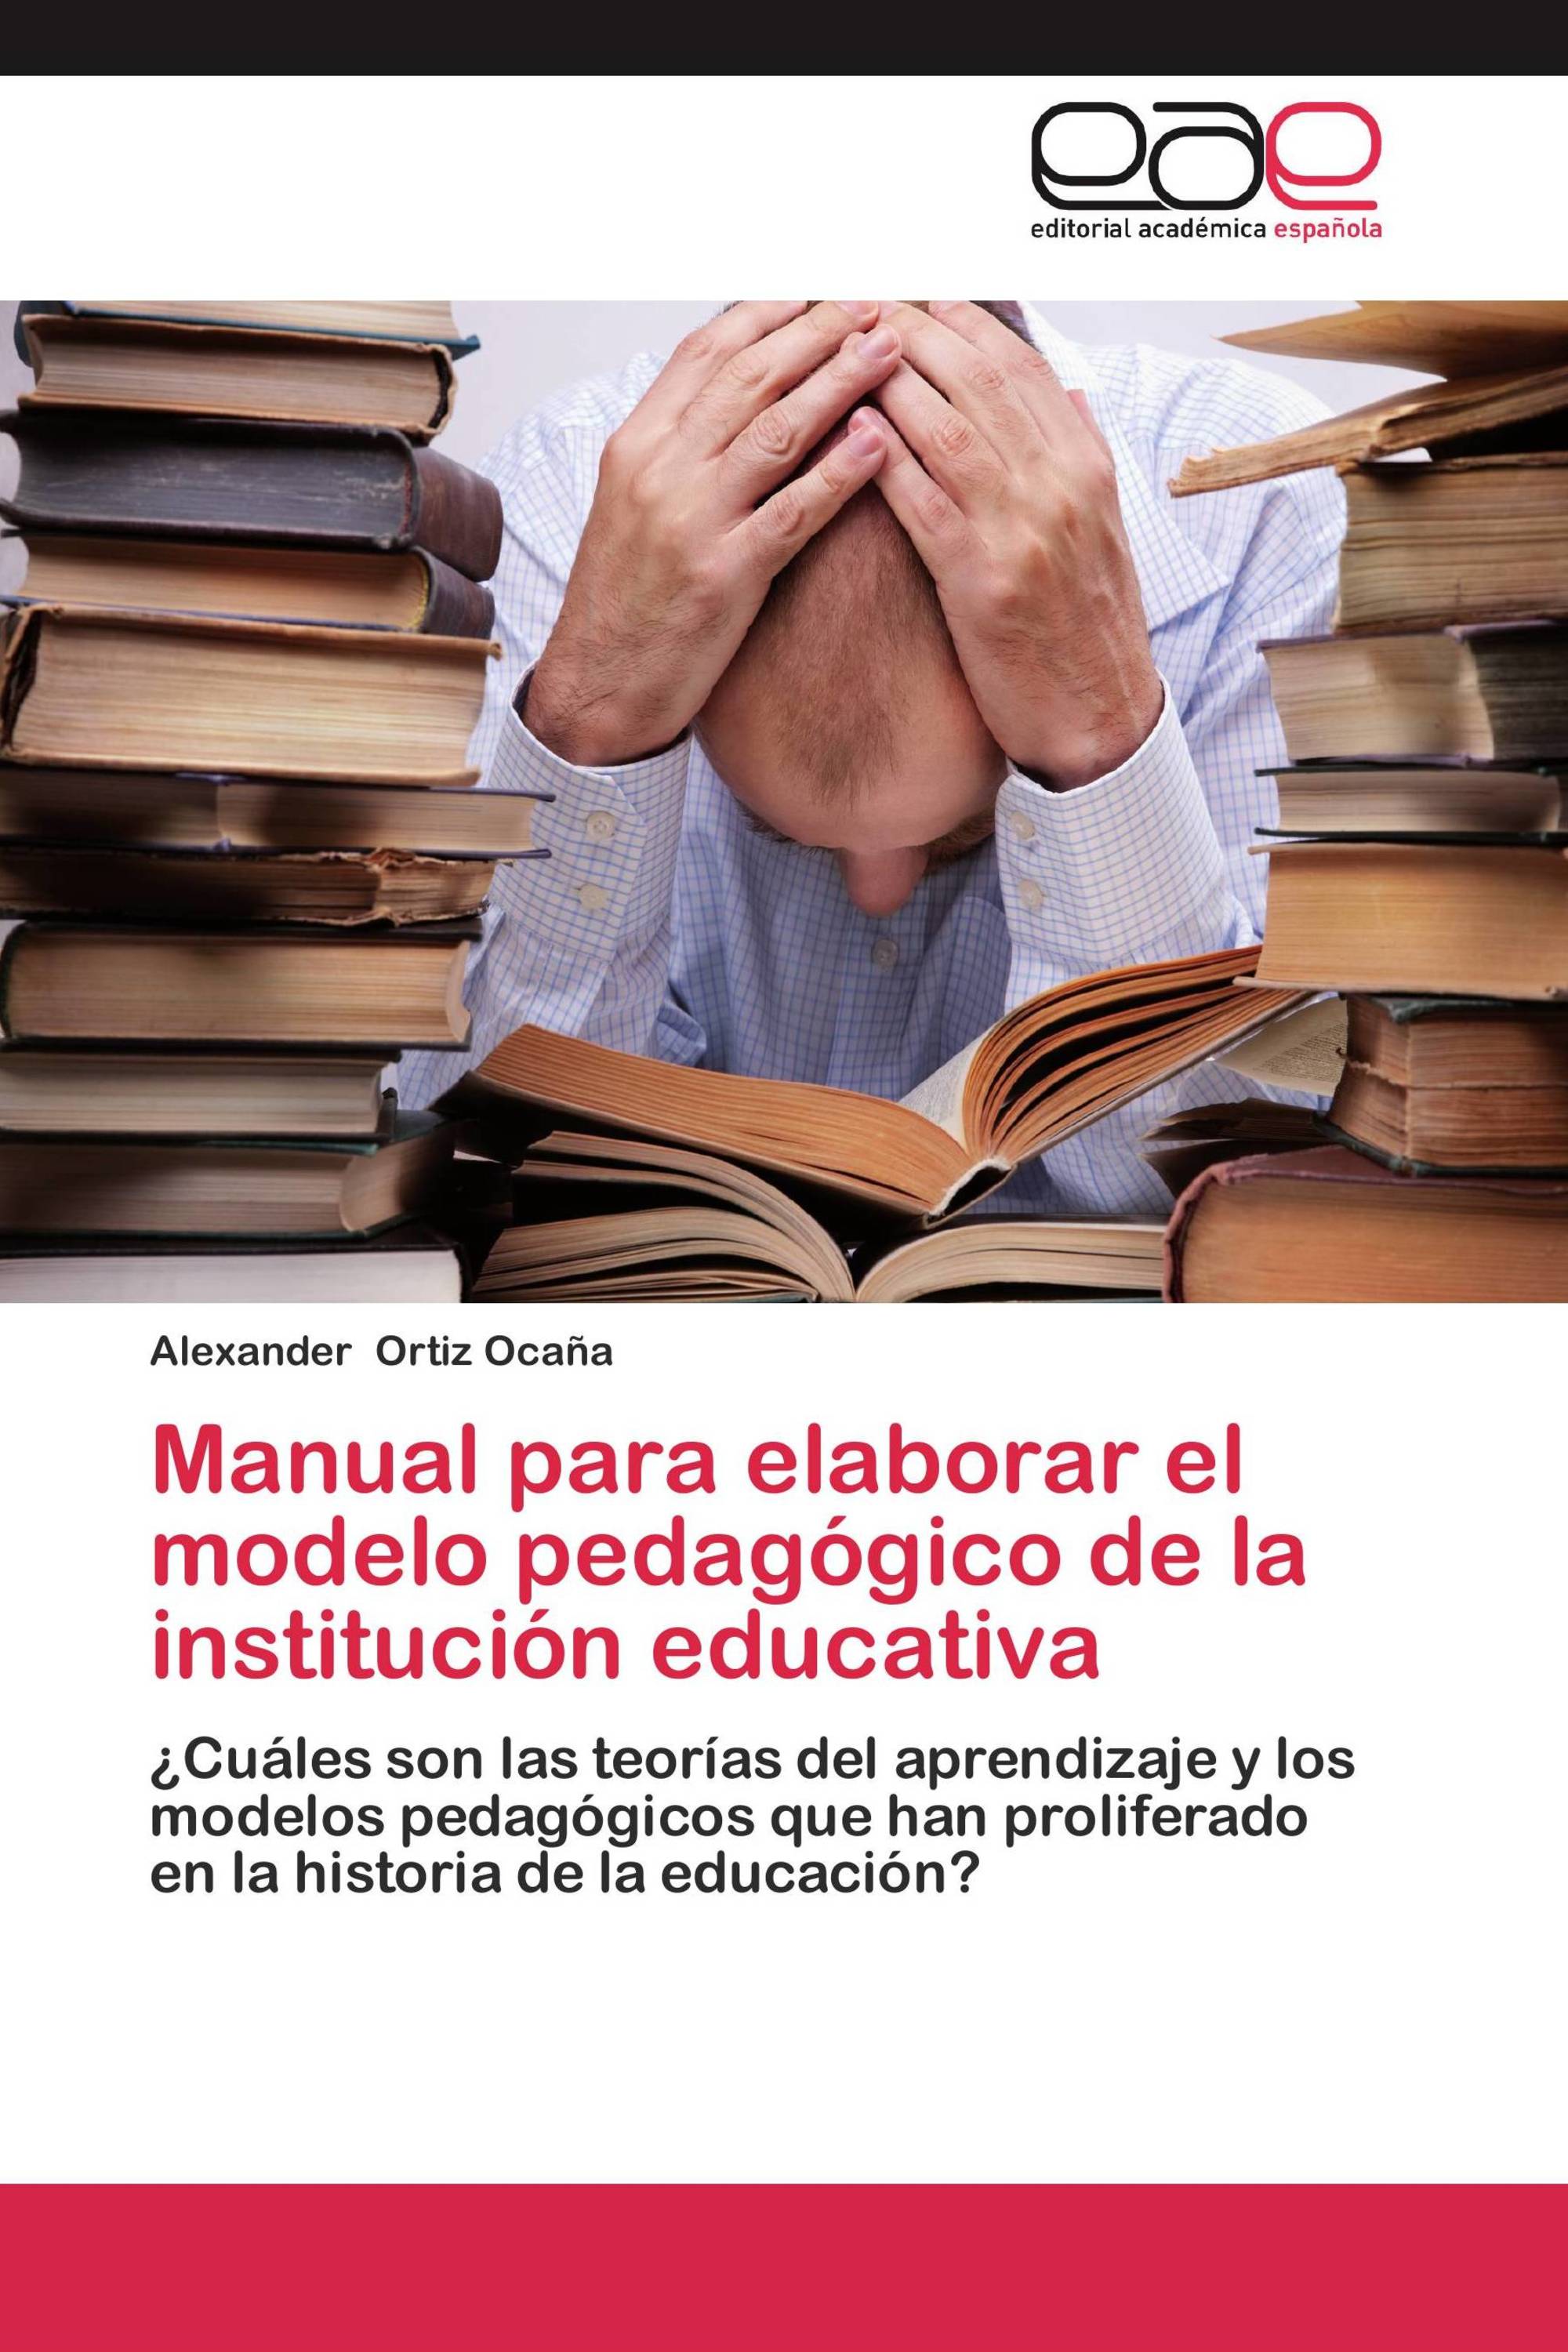 Manual para elaborar el modelo pedagógico de la institución educativa